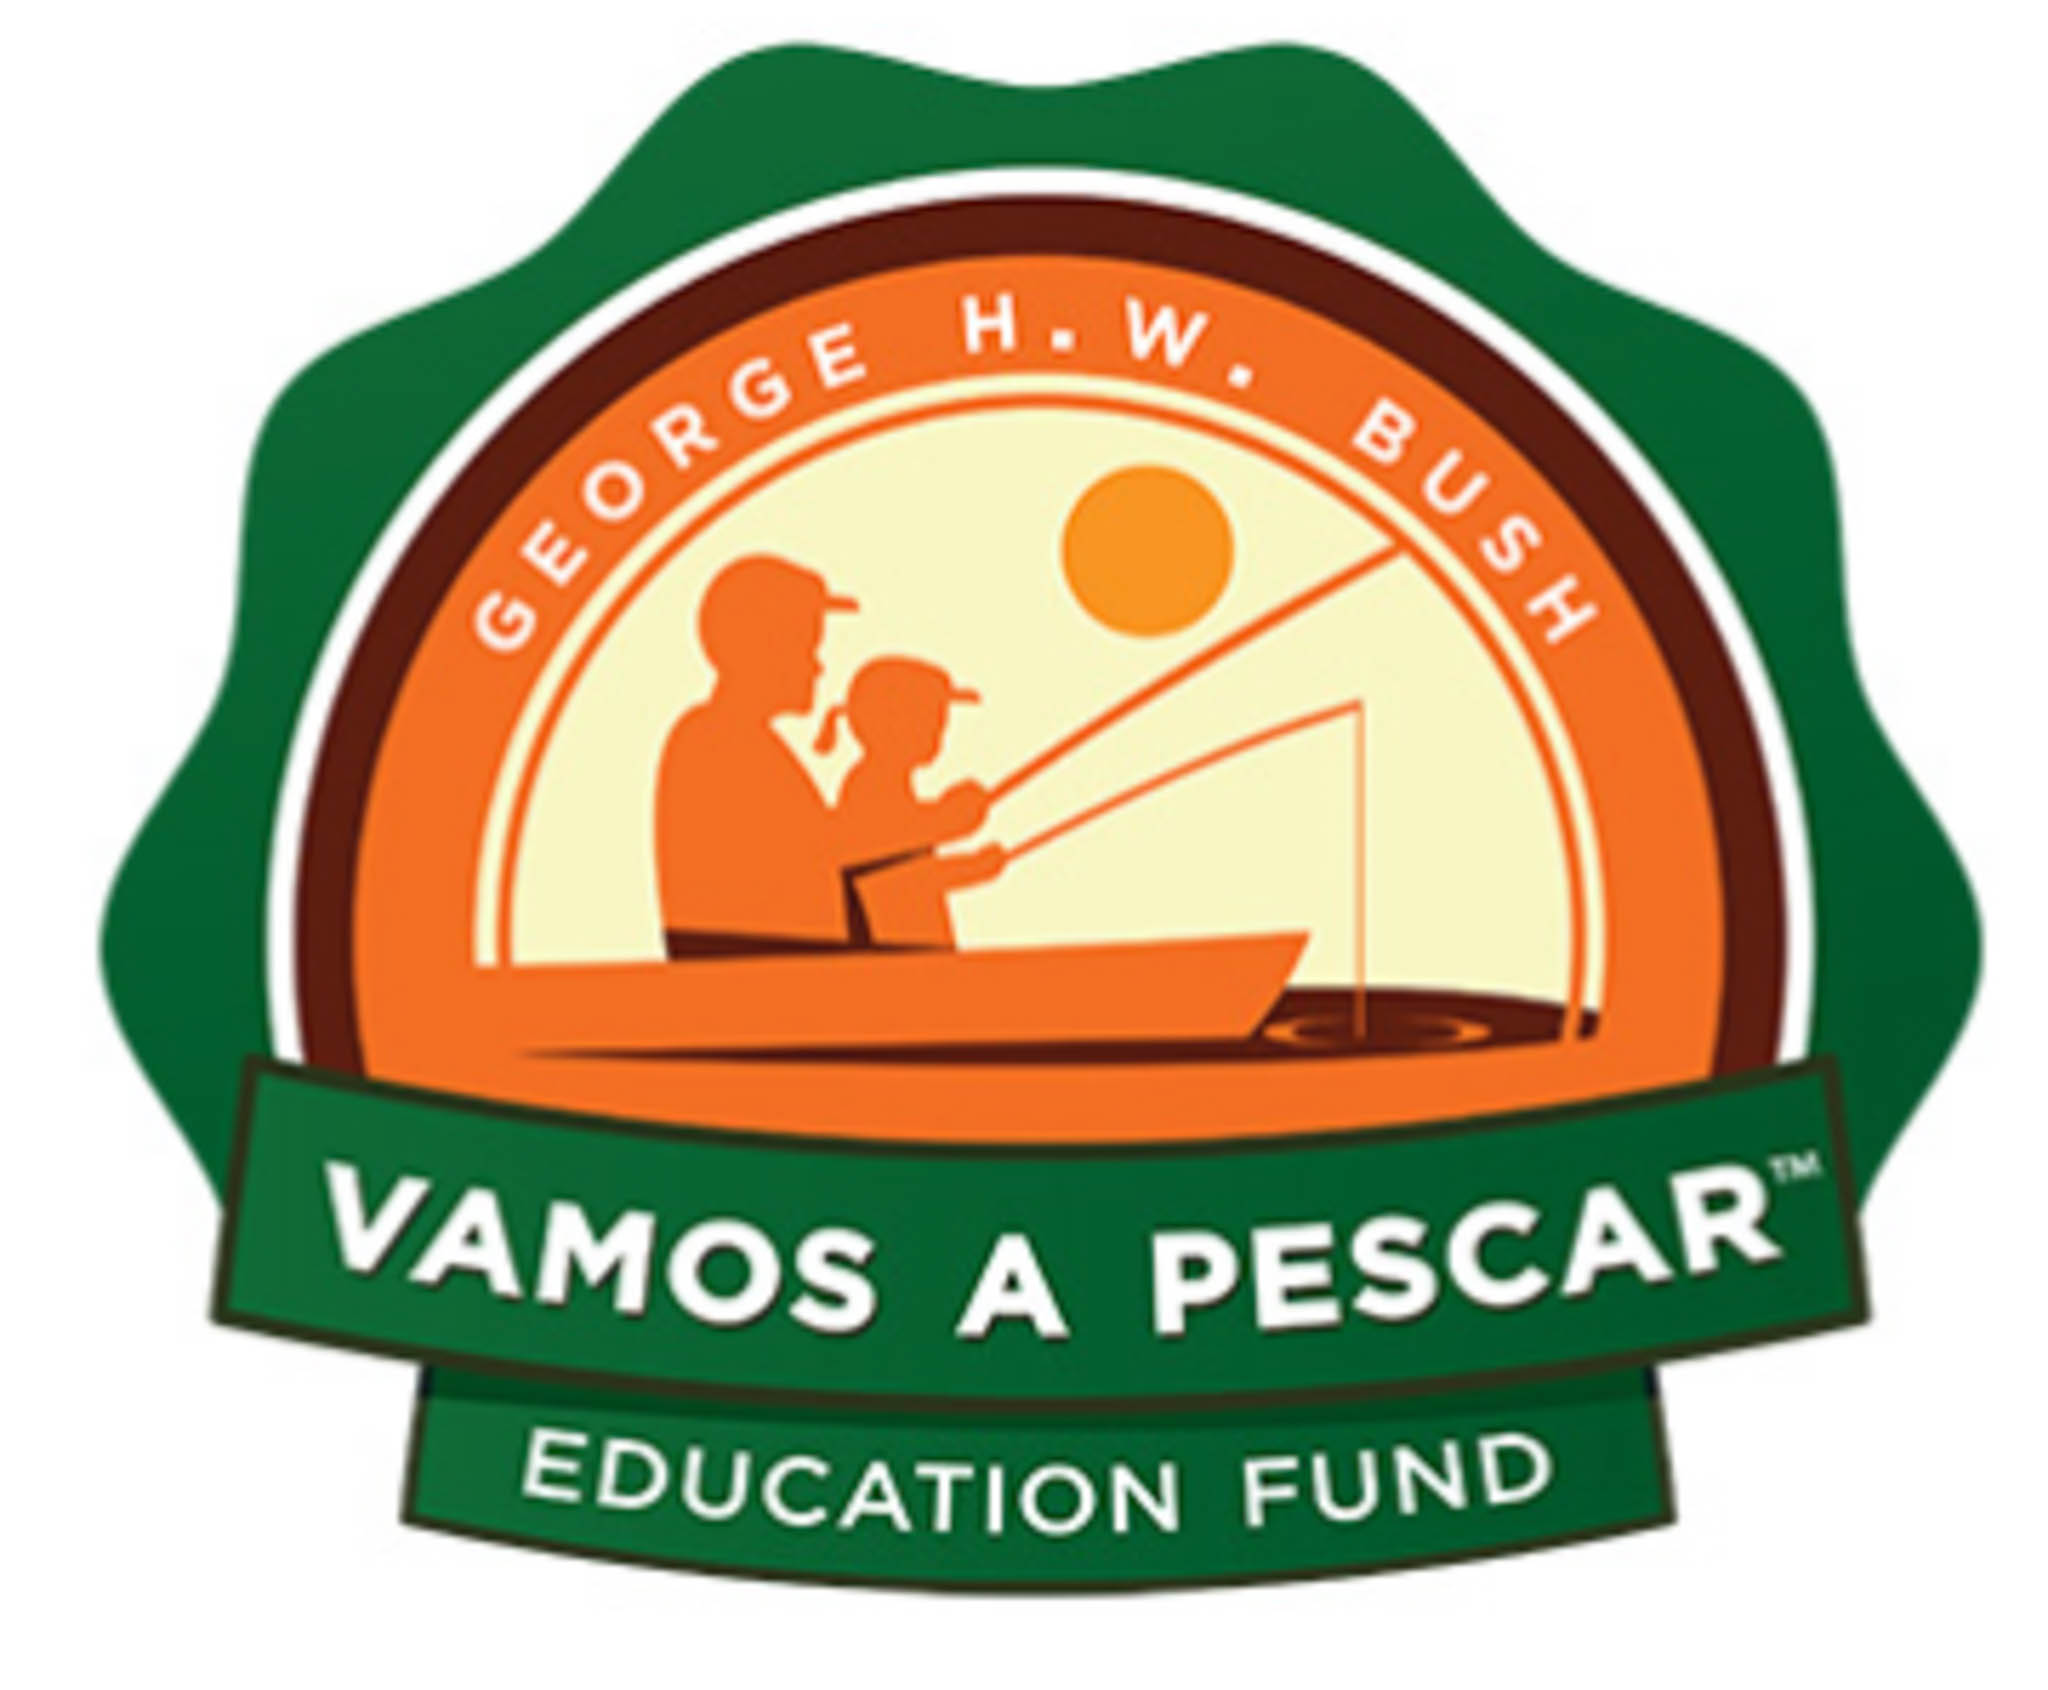 George HW Bush Vamos A Pescar Education Fund